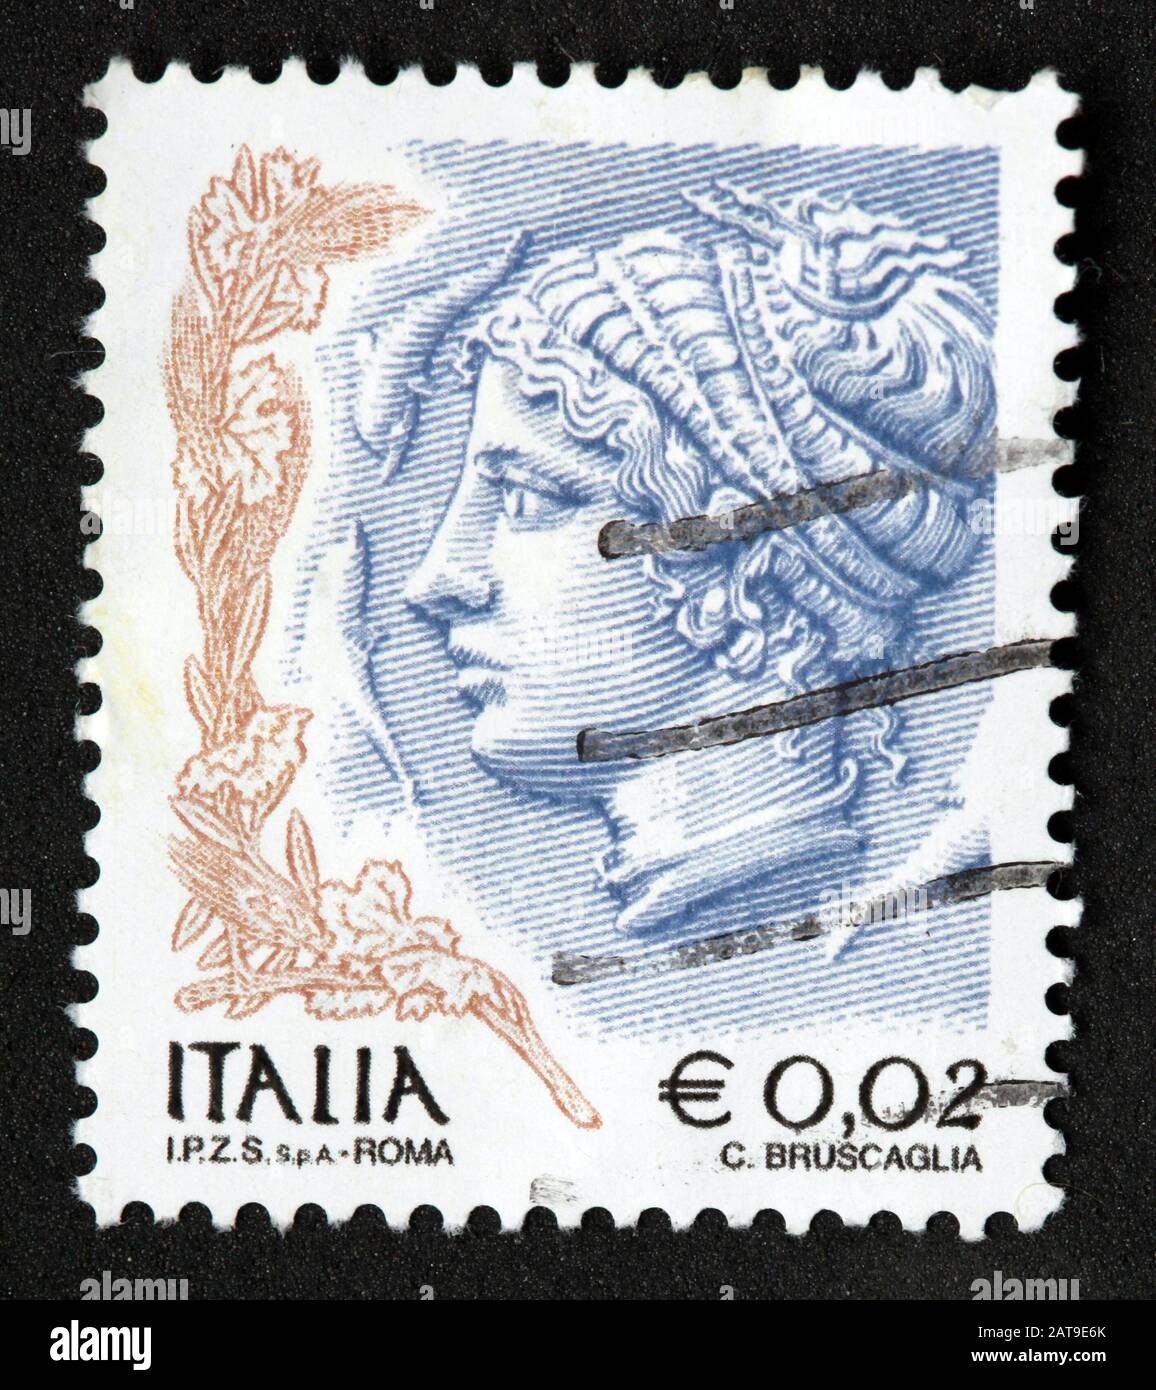 Timbro italiano, timbro postale Italia utilizzato e franco, Foto Stock